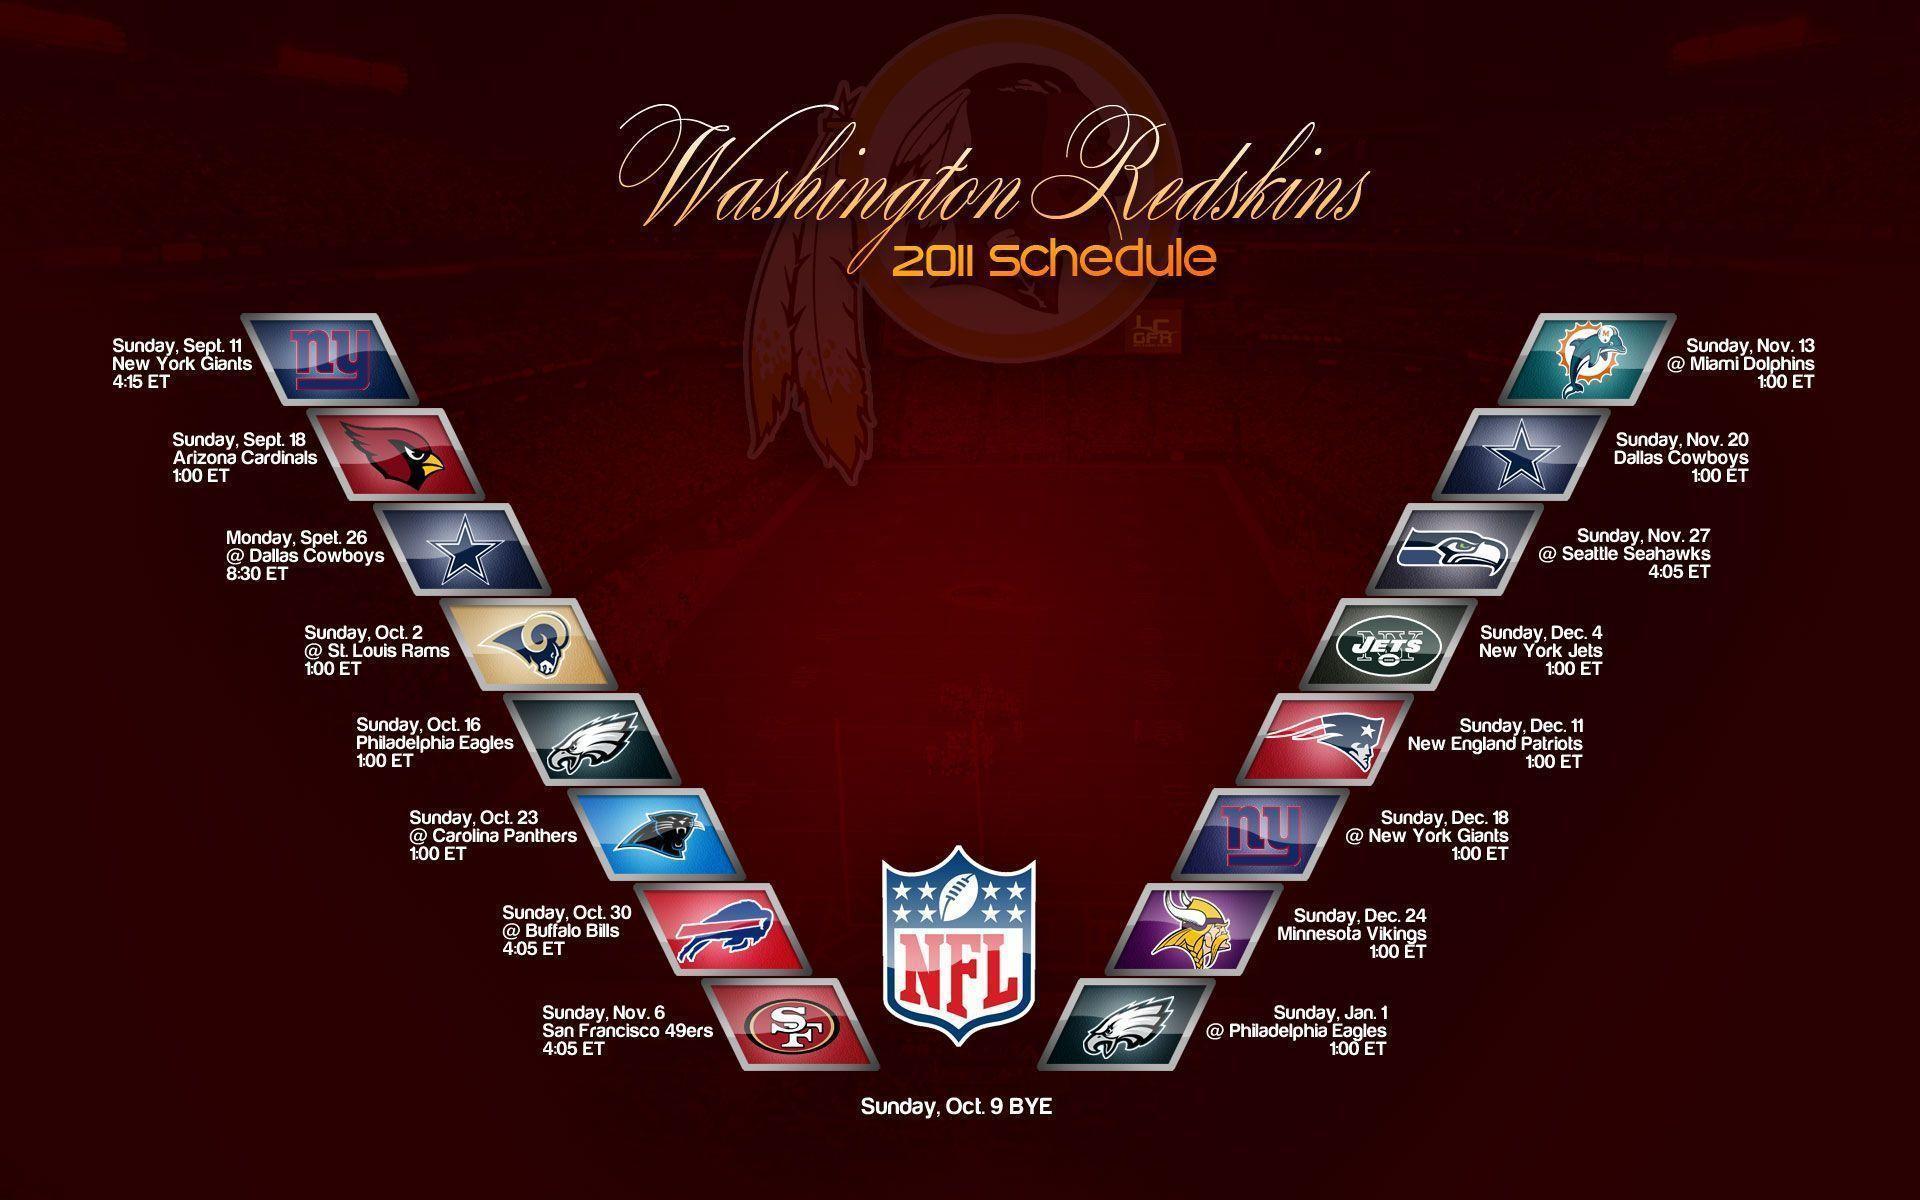 Redskins 2014 Schedule